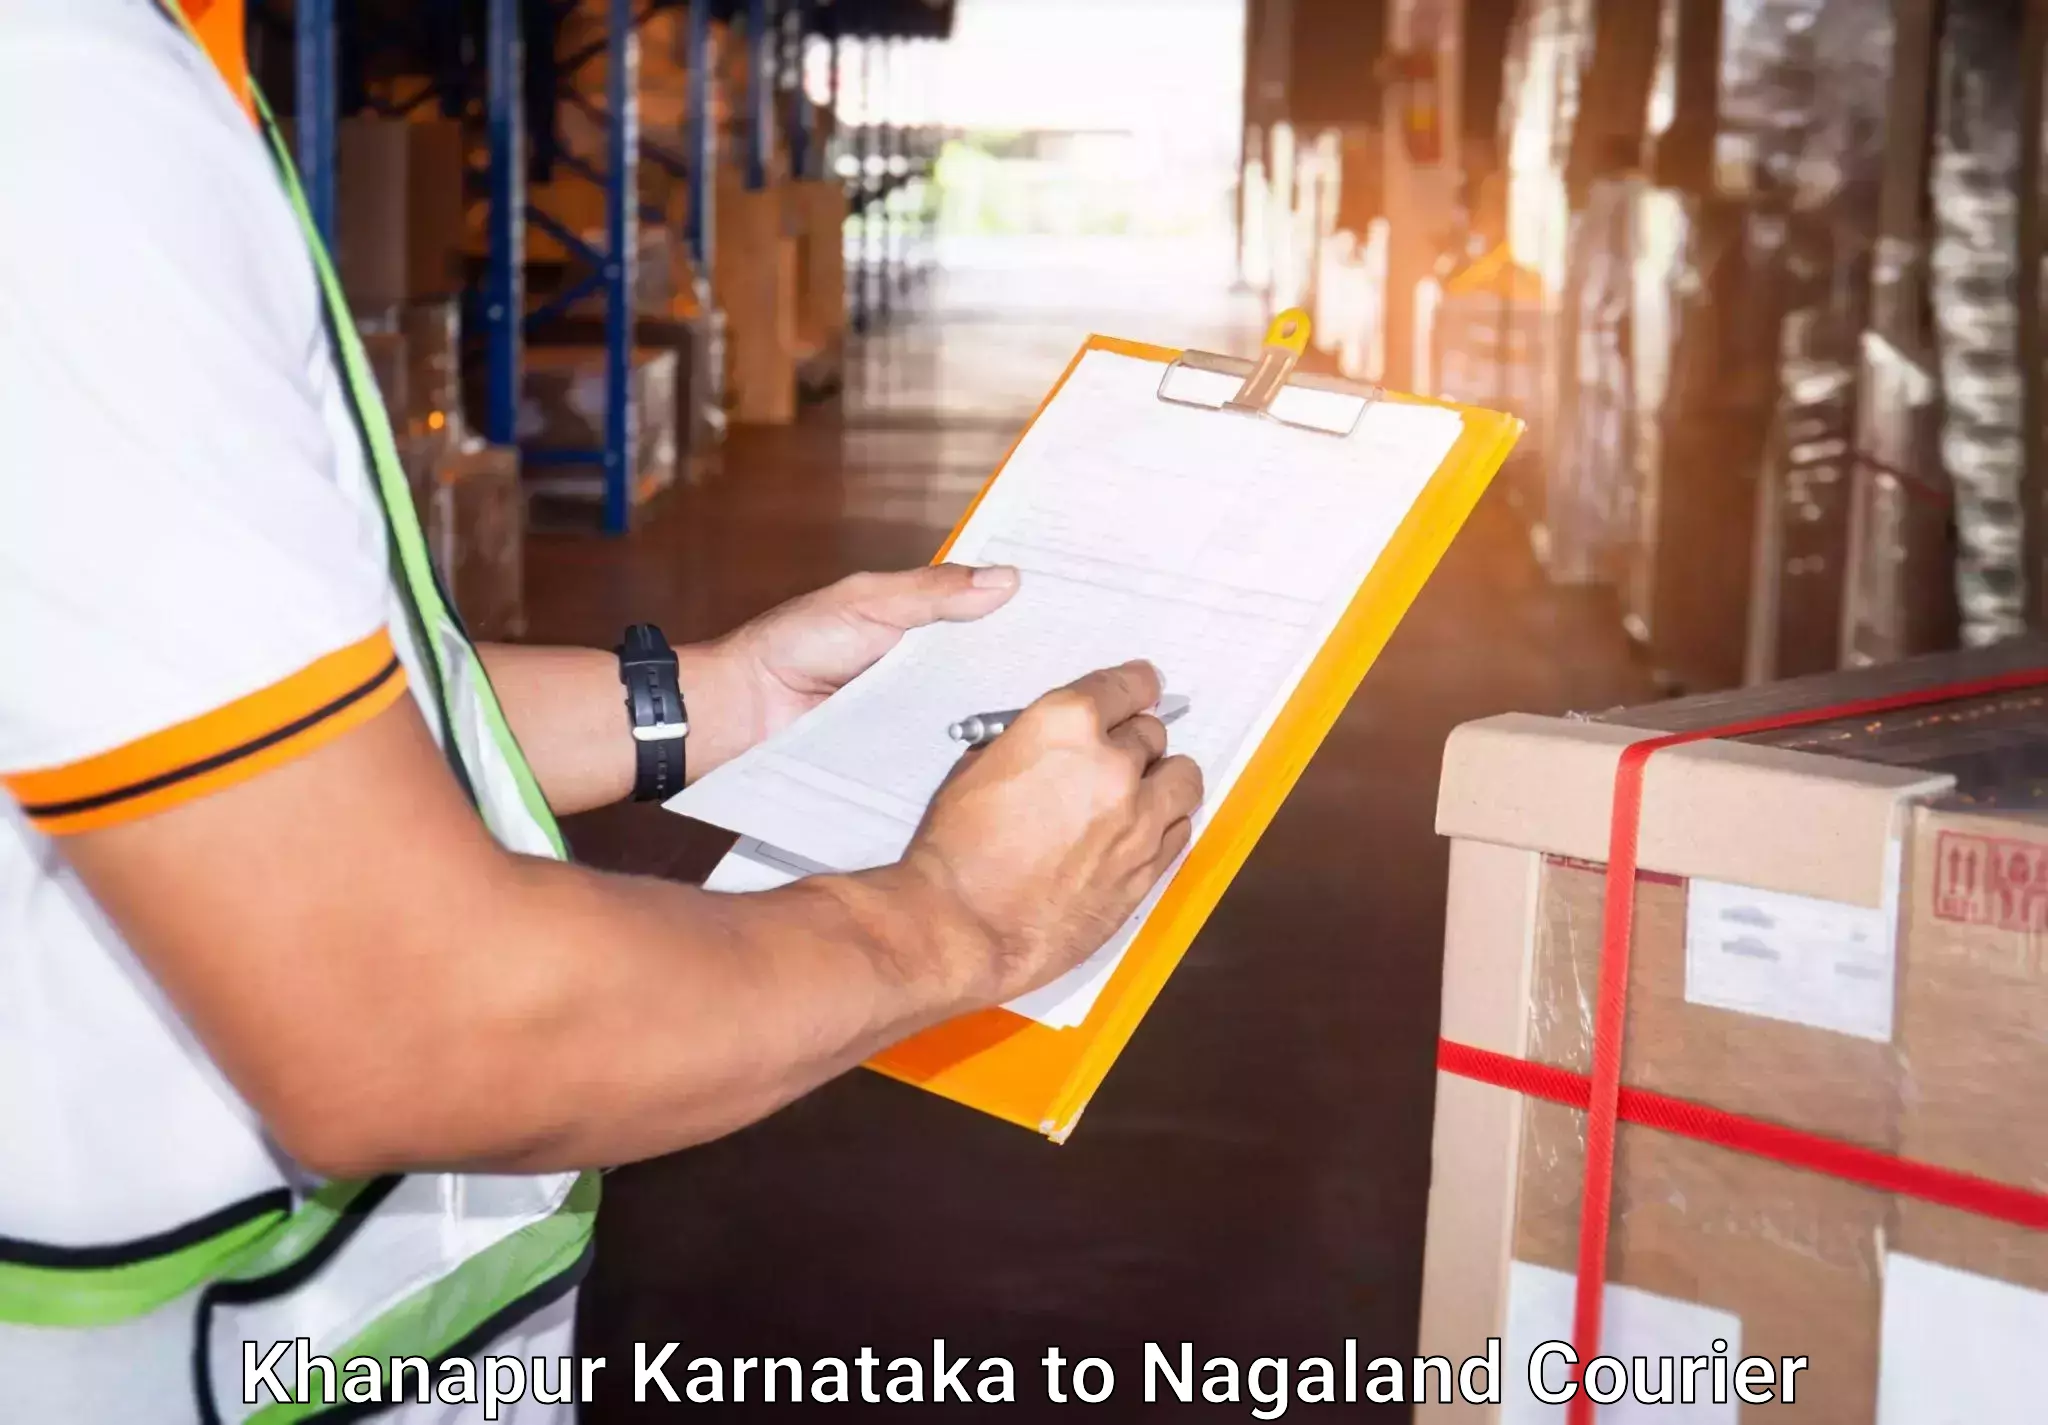 Baggage shipping service Khanapur Karnataka to Nagaland